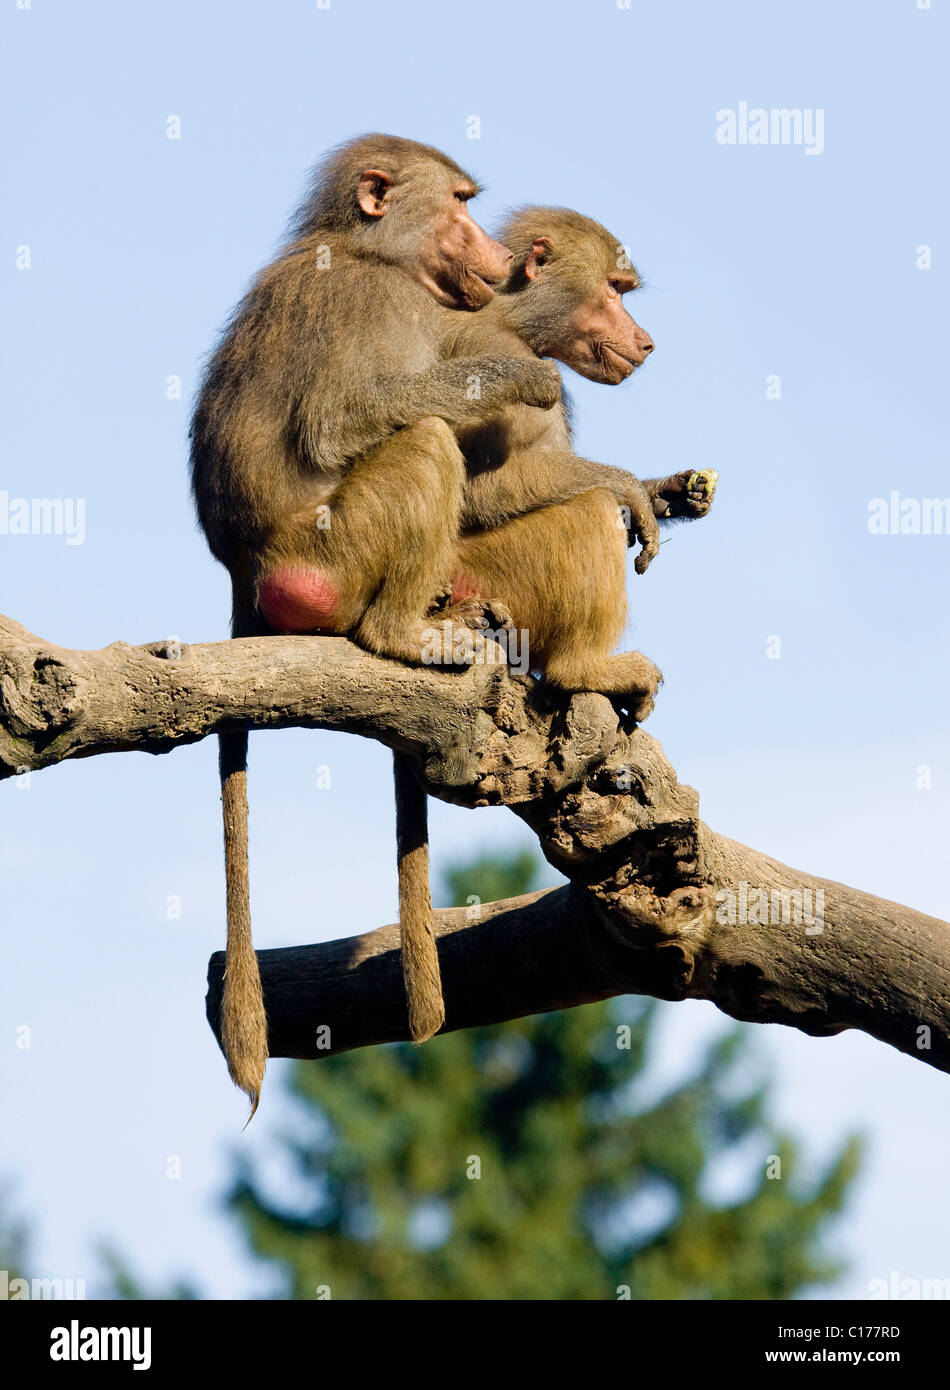 Two Hamadryas Baboons (Papio hamadryas) sitting on a tree trunk Stock Photo